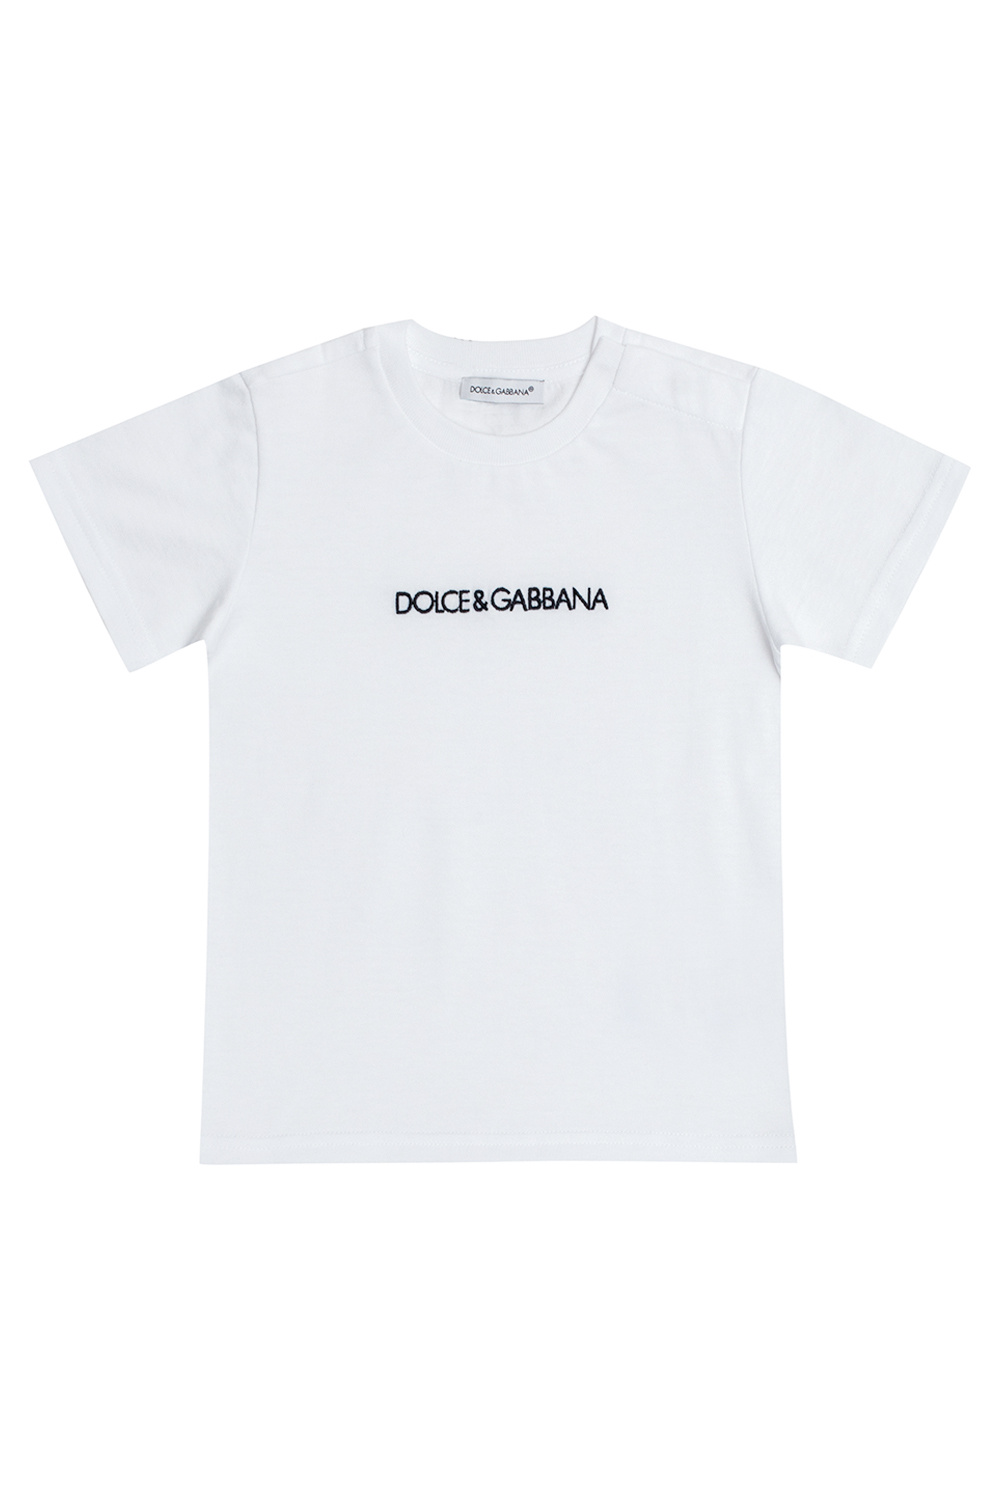 DOLCE & GABBANA PHONE CASE WITH STRAP Logo T-shirt